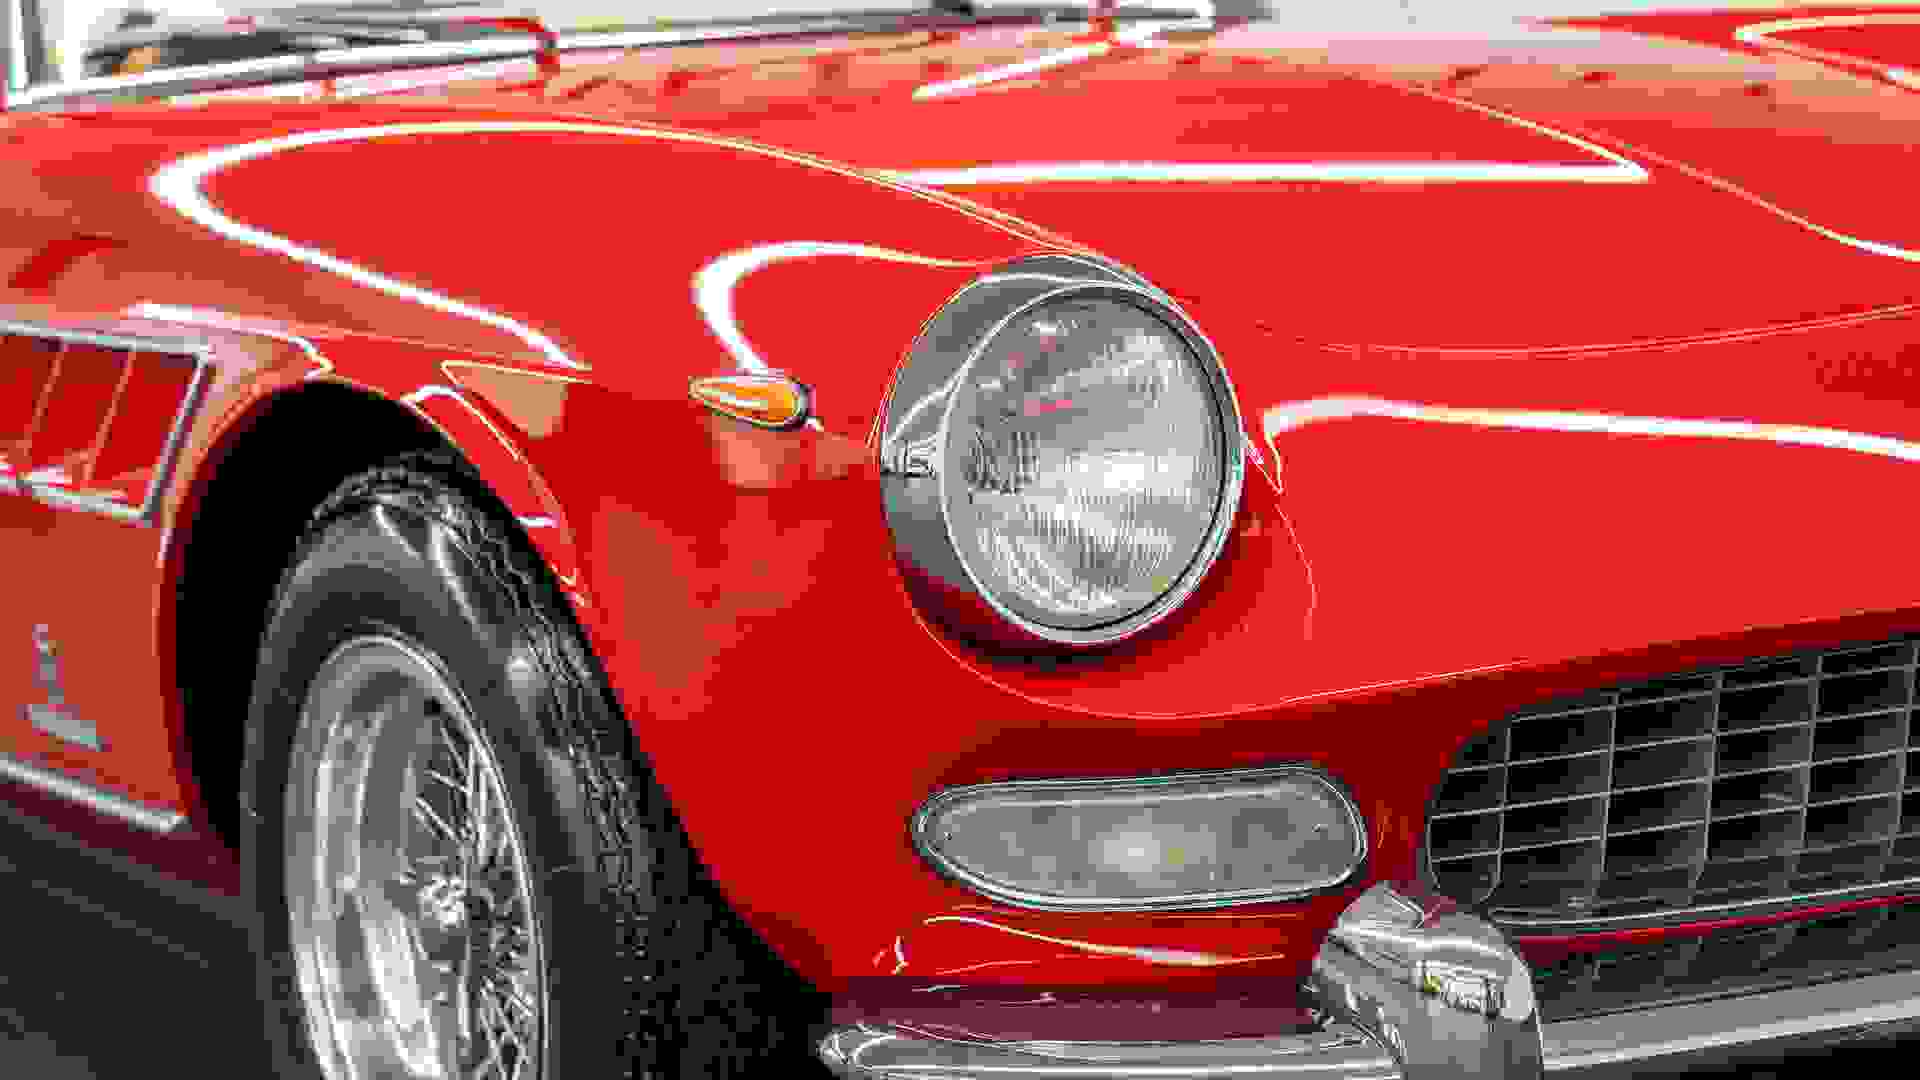 Ferrari 275 GTS Photo 5781a477-e2f1-4eba-bf28-fd148068eadb.jpg